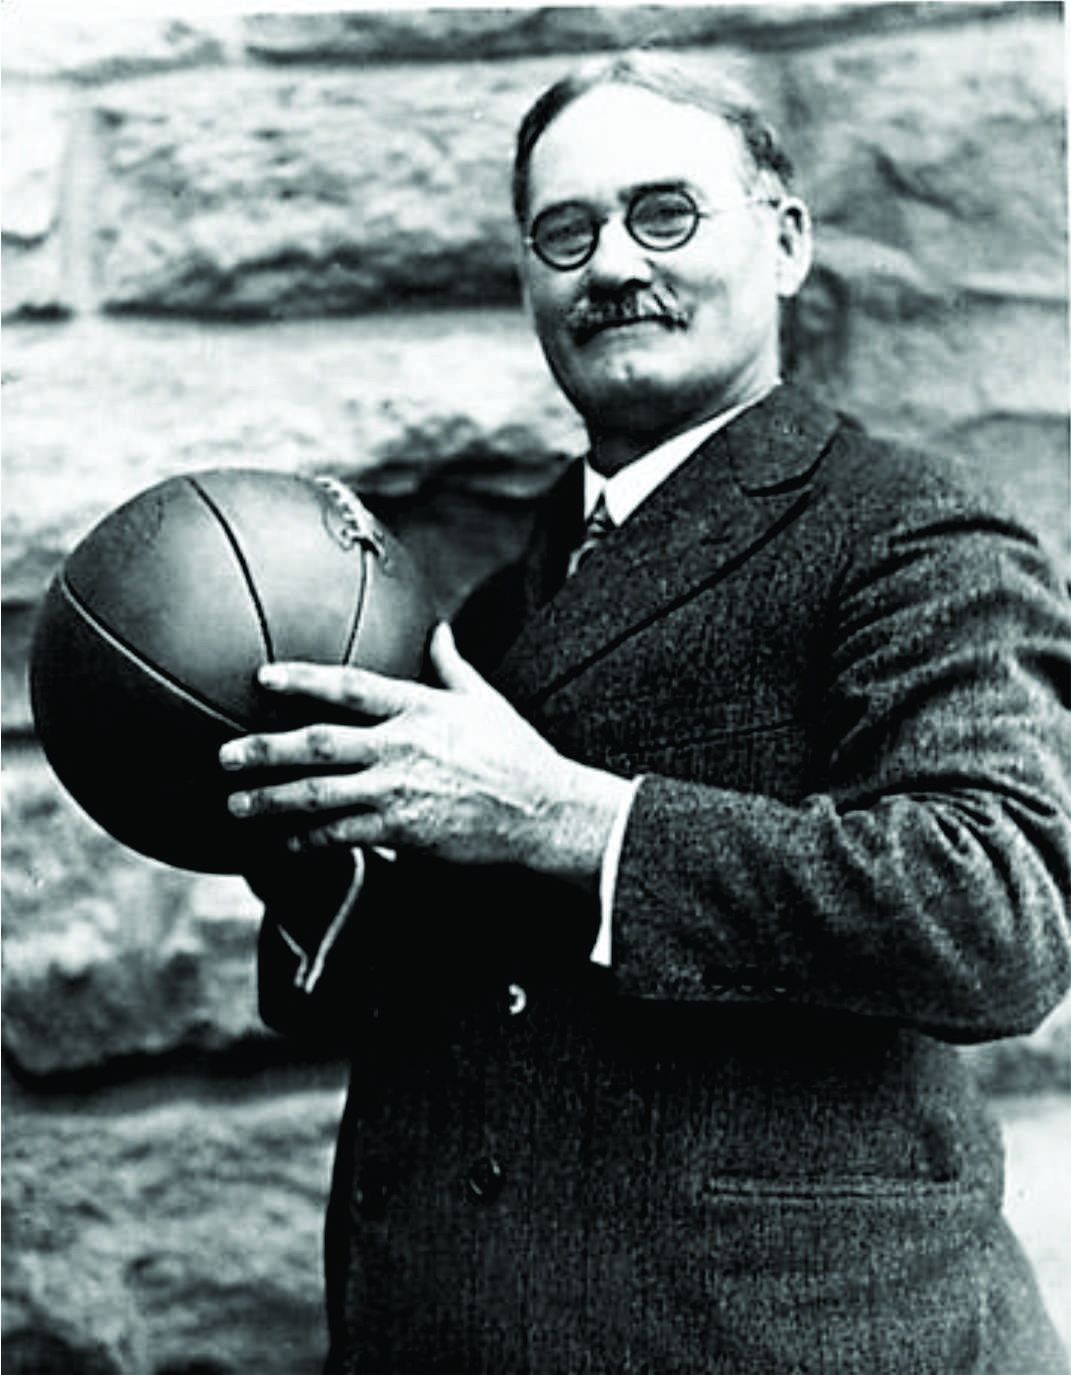 CANAL #SPORTS: O primeiro jogo de basquete da história